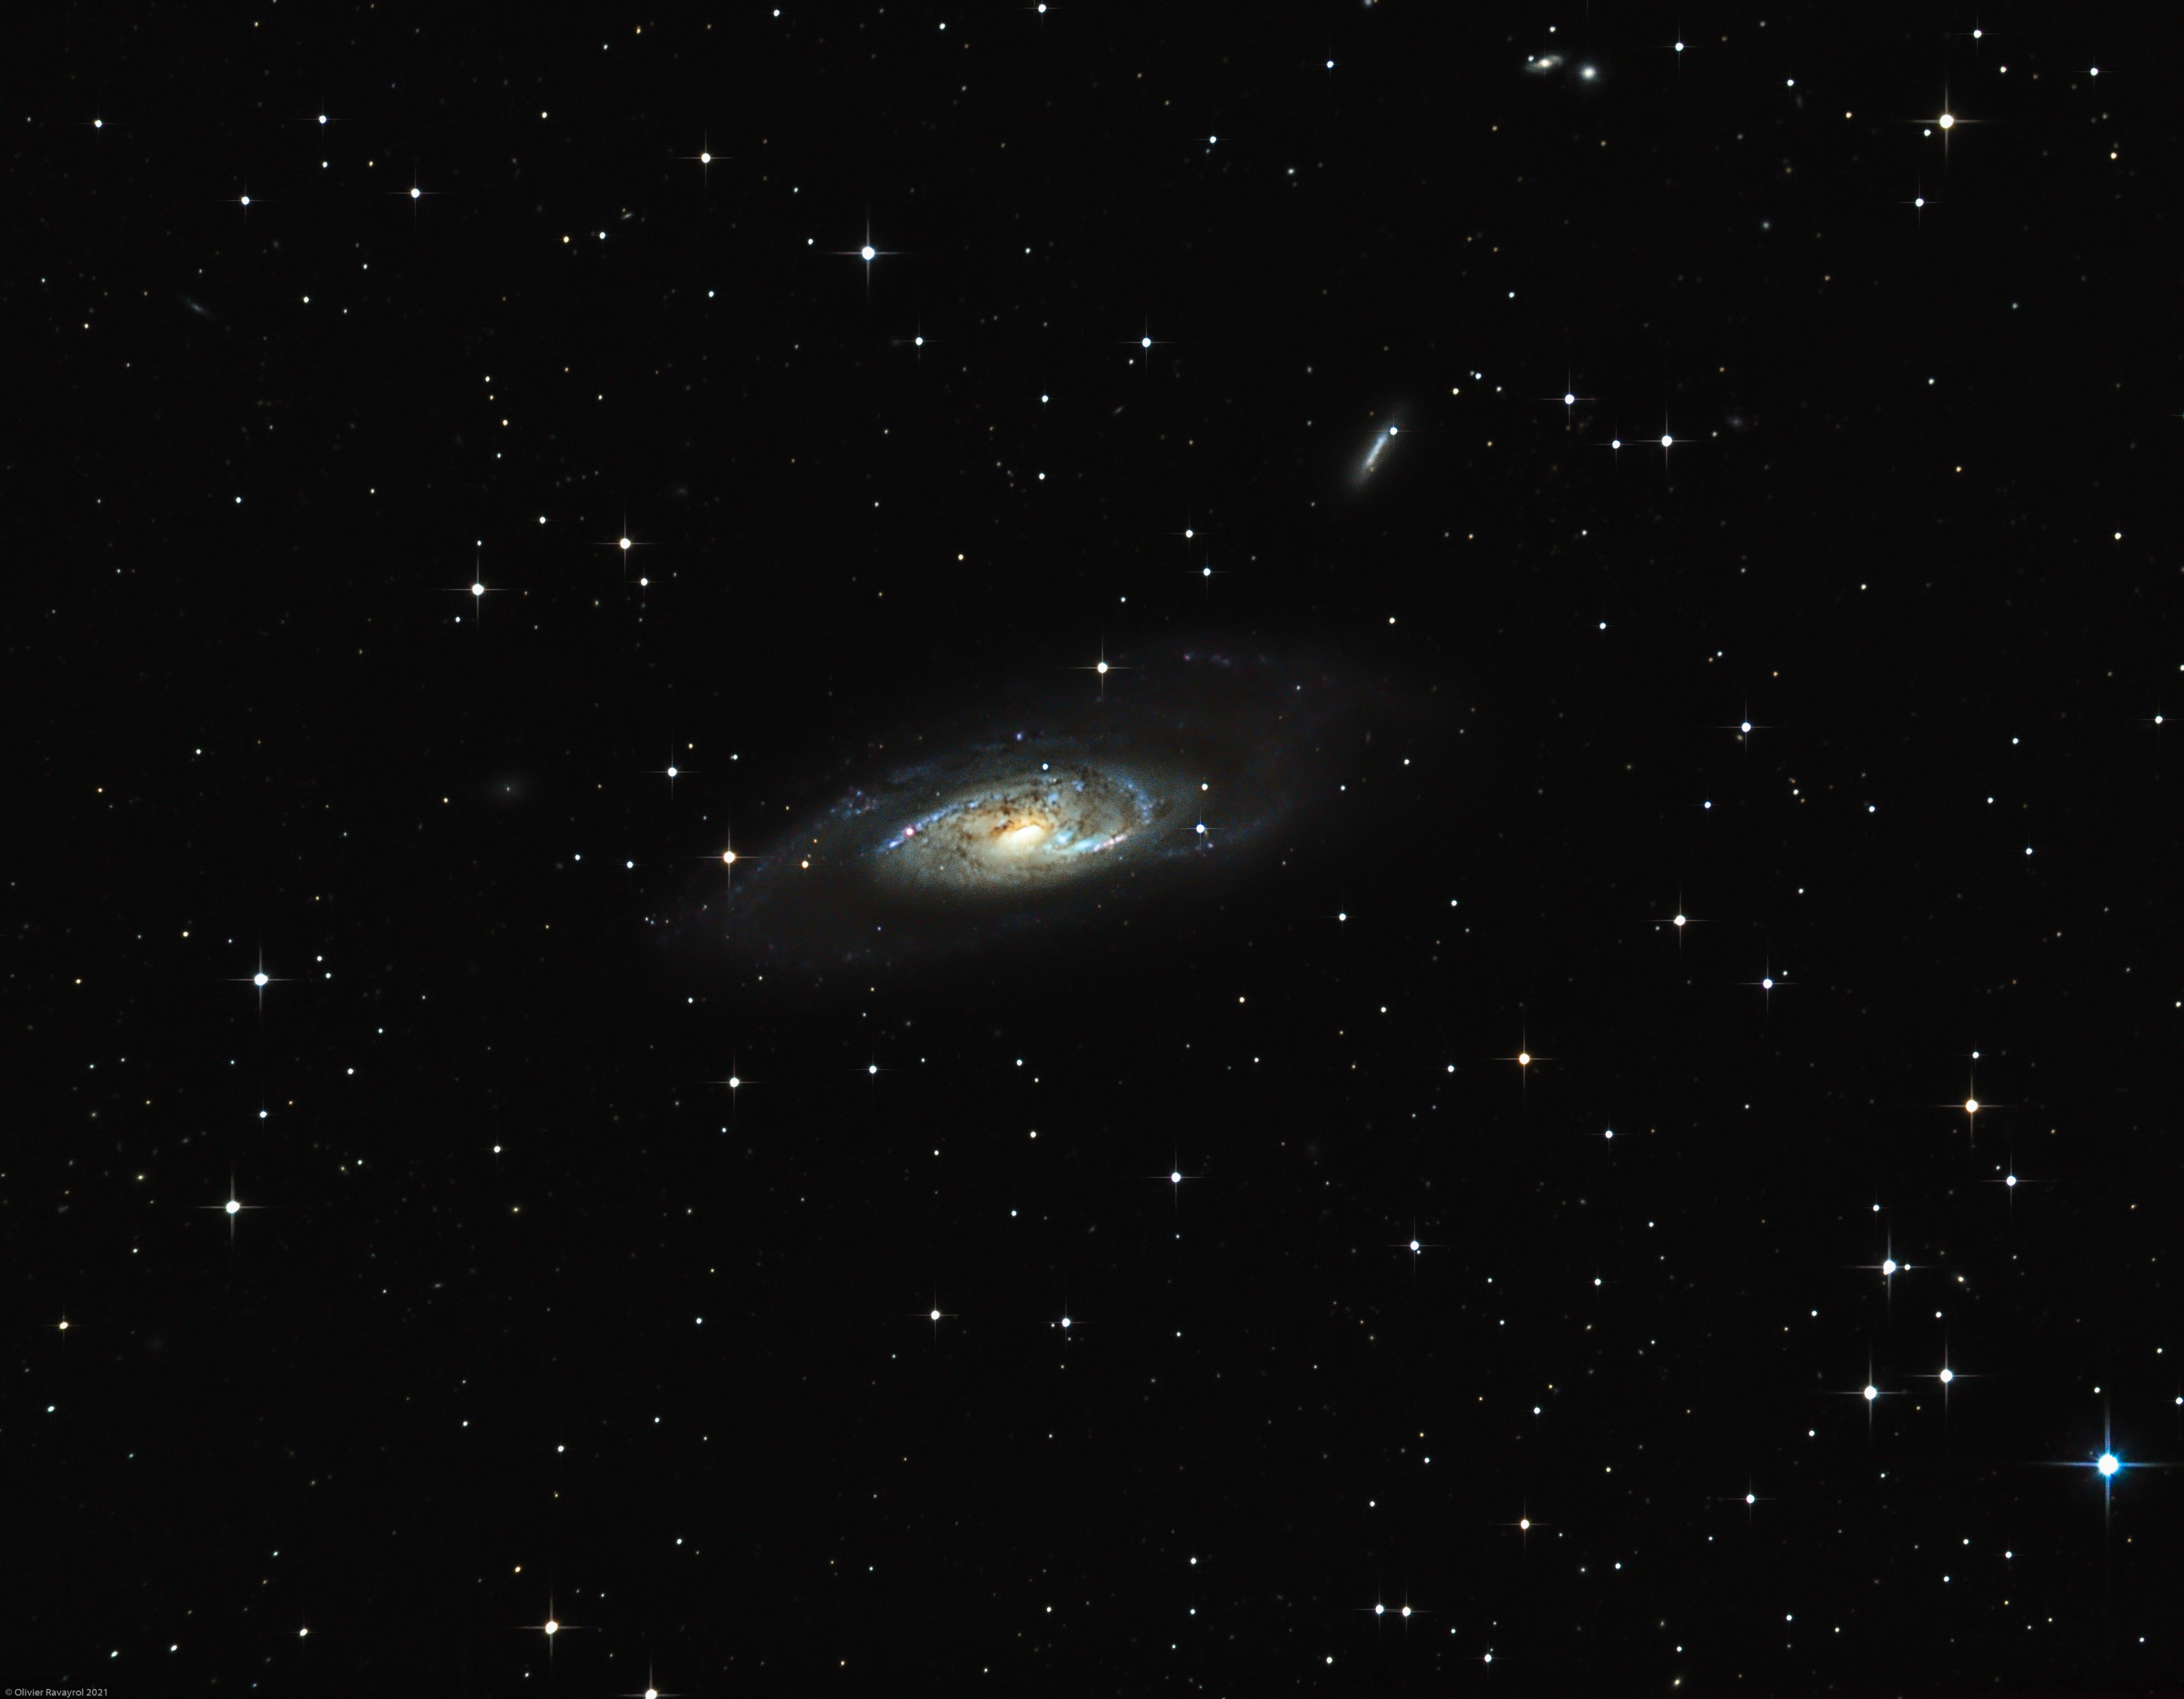 Galaxie M106